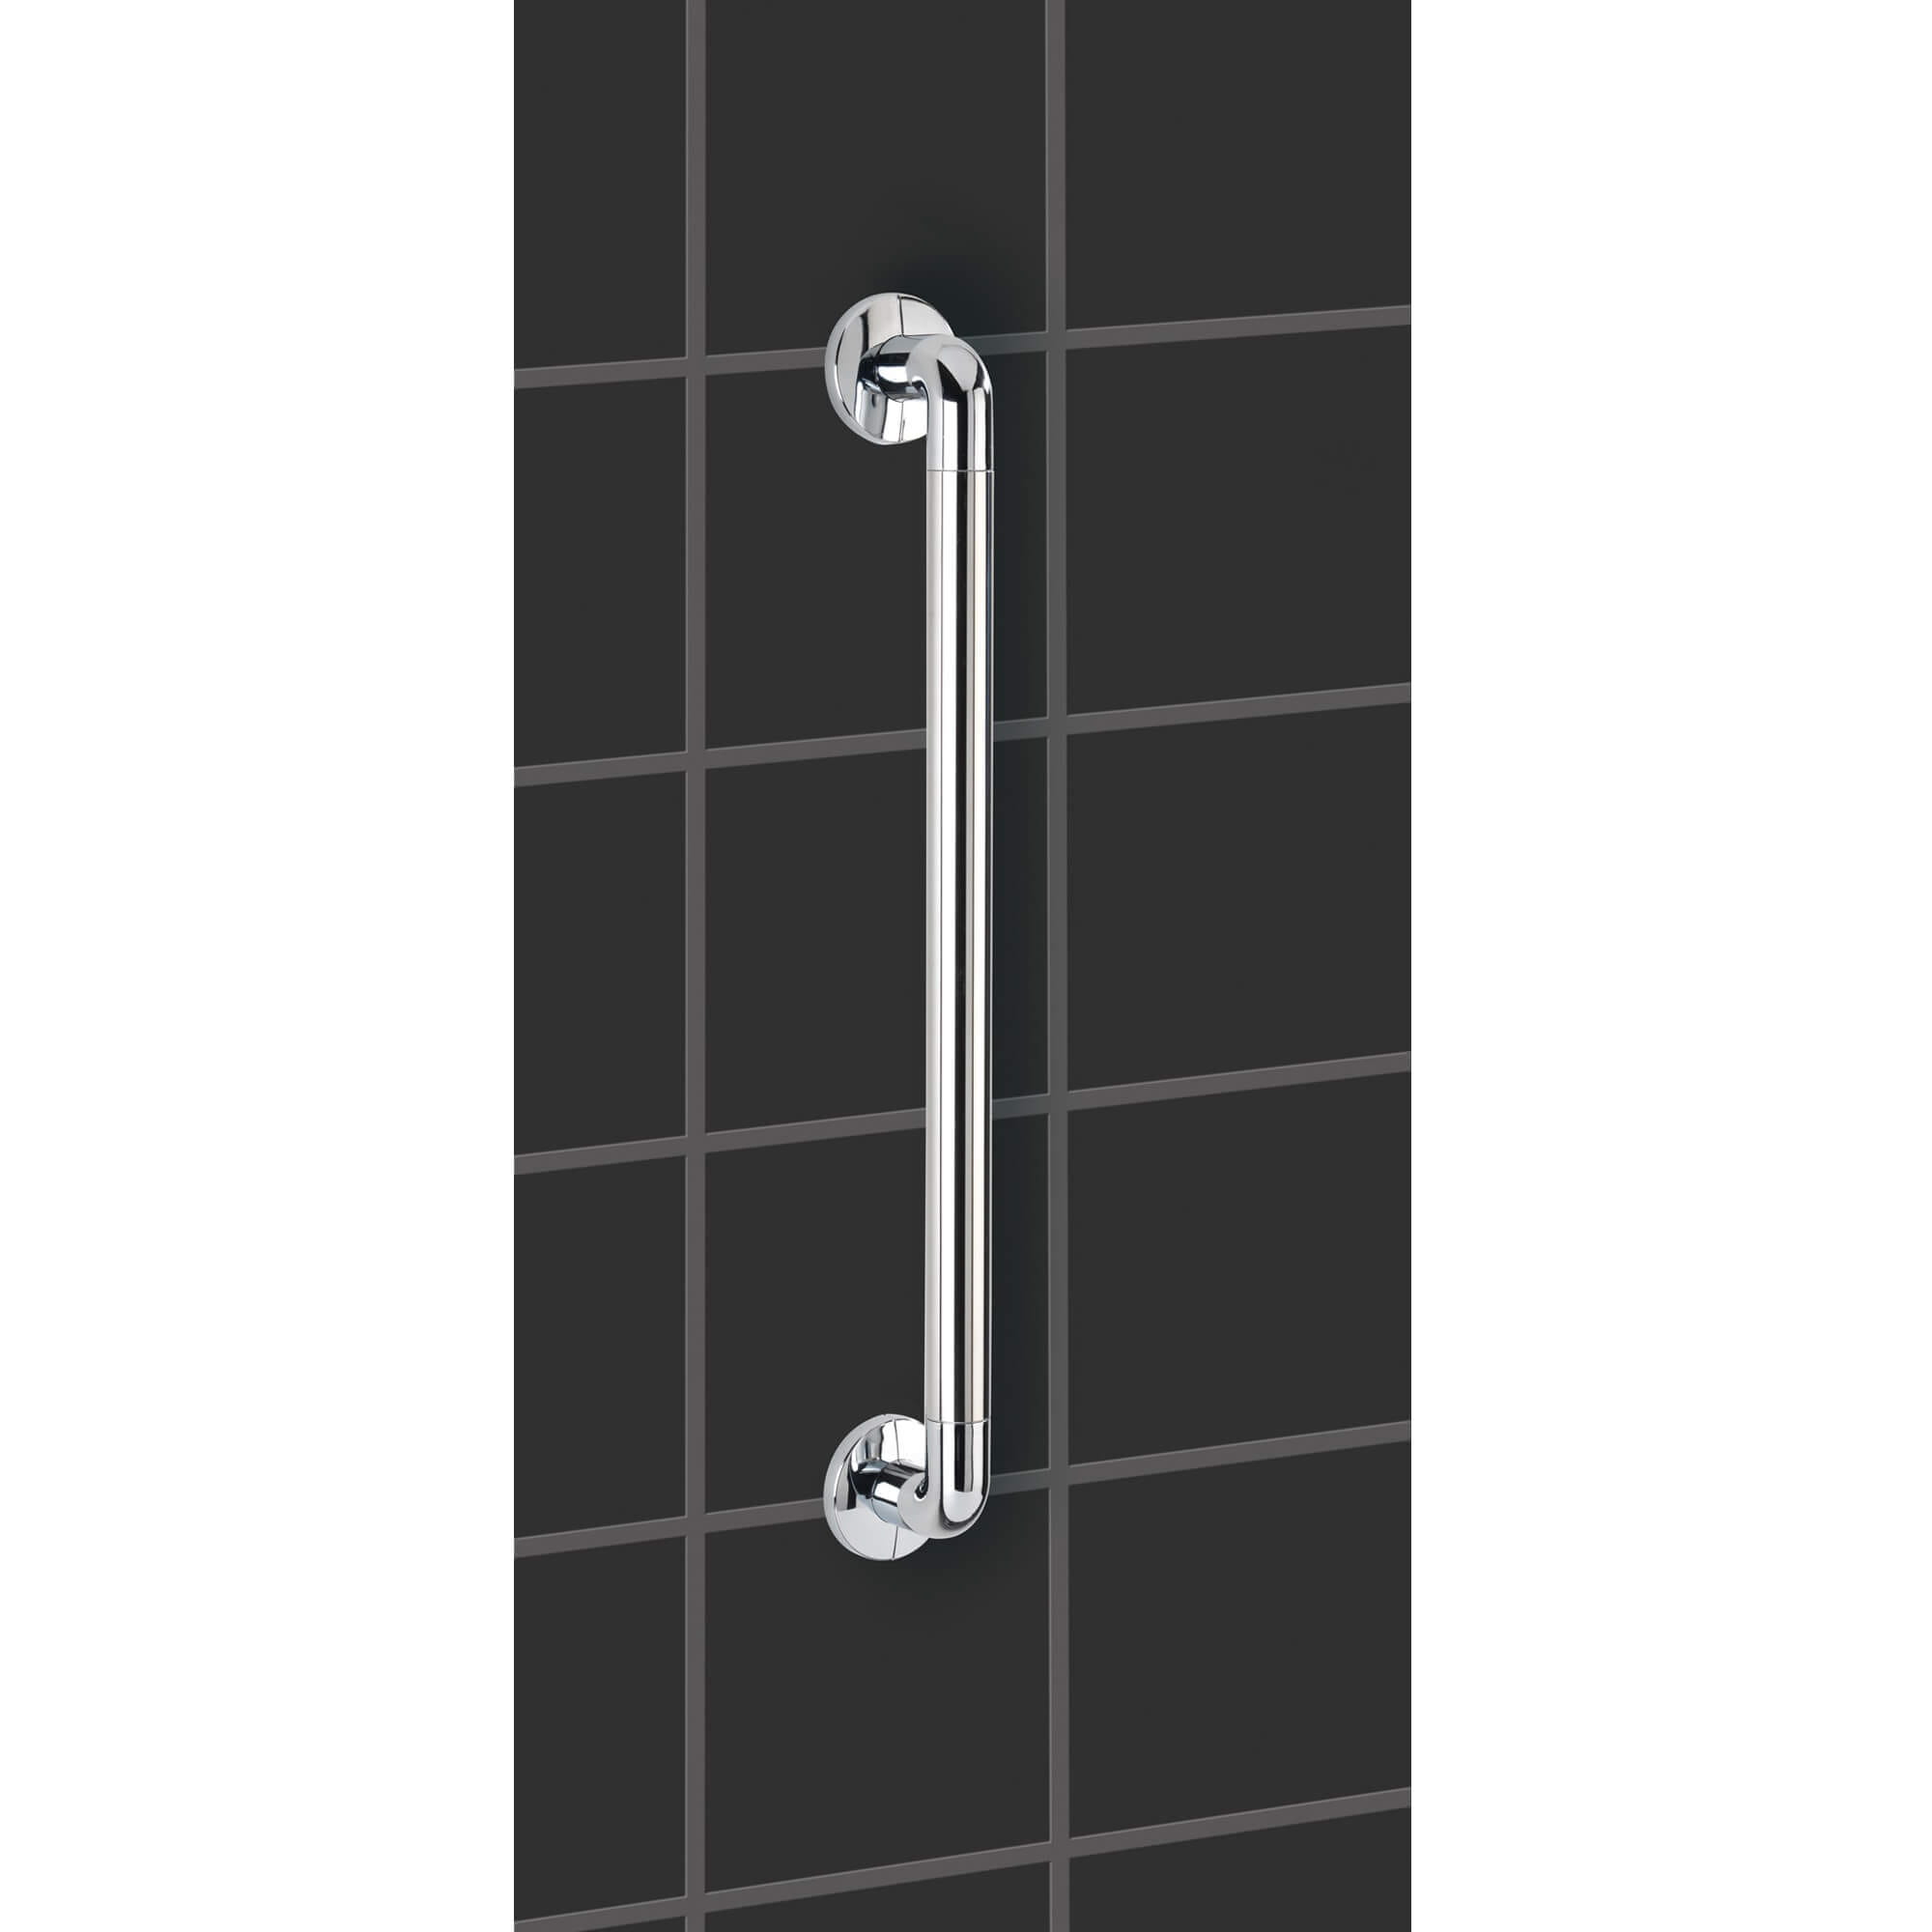 Der Wandhaltegriff SECURA 64,5 cm ist eine Gleichgewichtsstütze und ermöglicht mehr Sicherheit beim Baden. Der Haltegriff besteht aus hochwertigem, stabilem Aluminium kombiniert mit Kunststoff. In 3 Farben. Tragkraft bis 120 kg. Von WENKO.